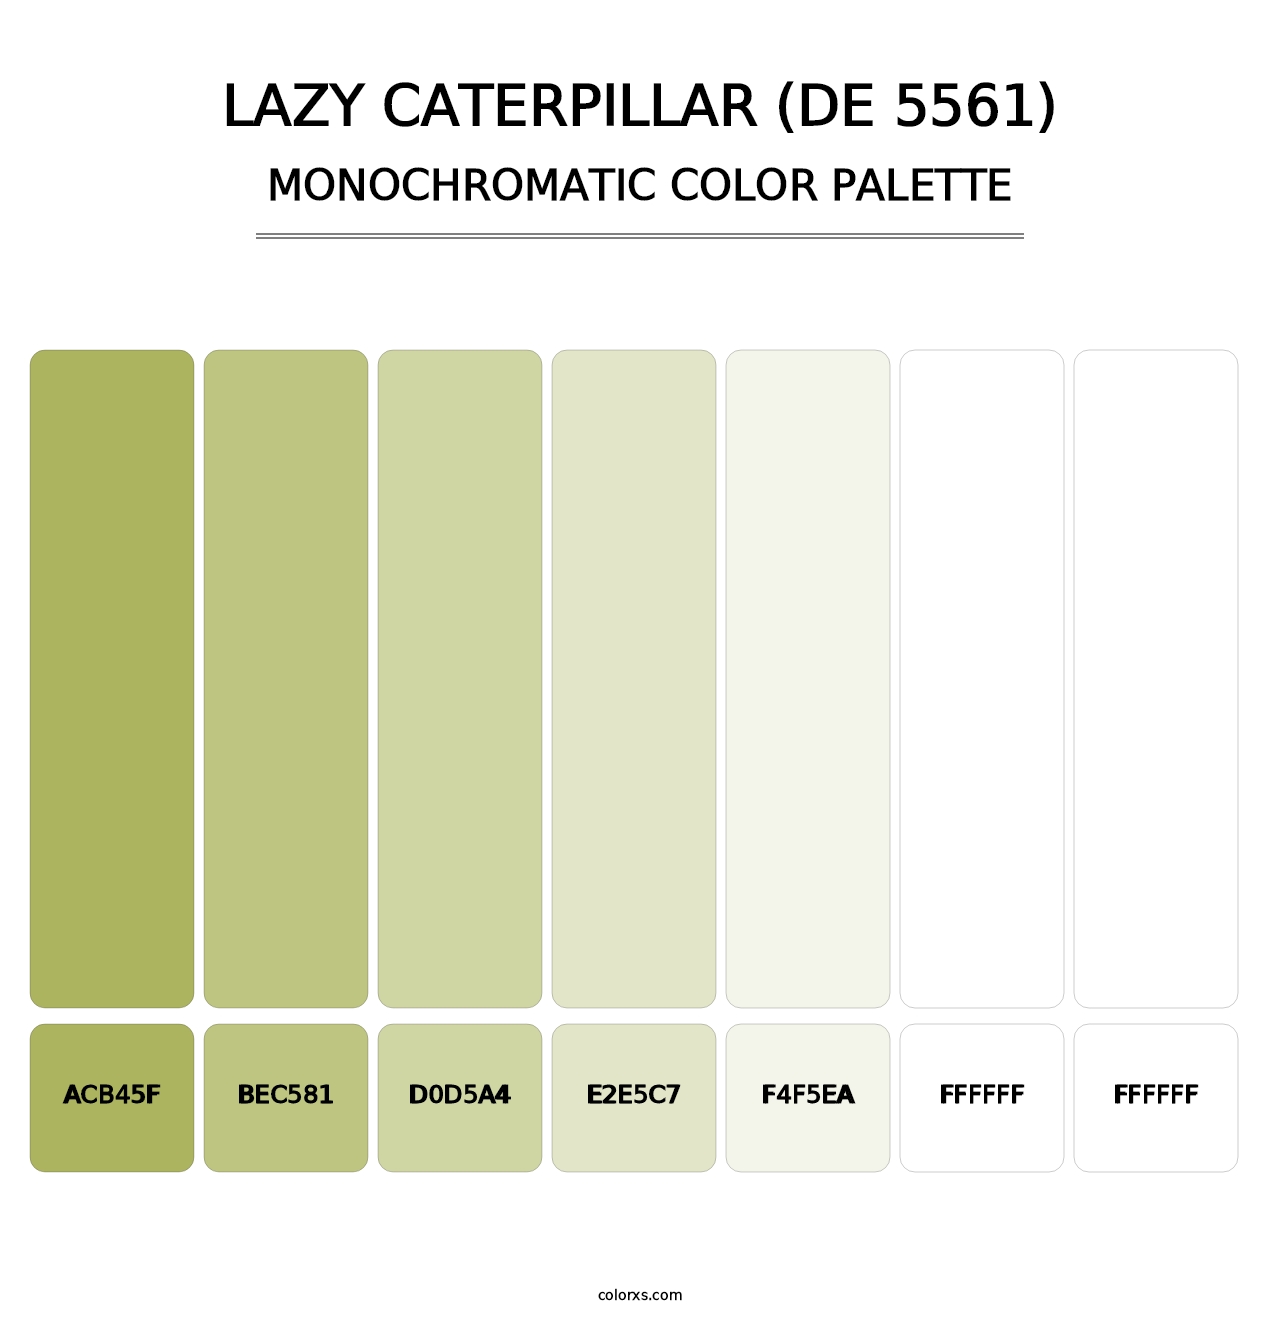 Lazy Caterpillar (DE 5561) - Monochromatic Color Palette